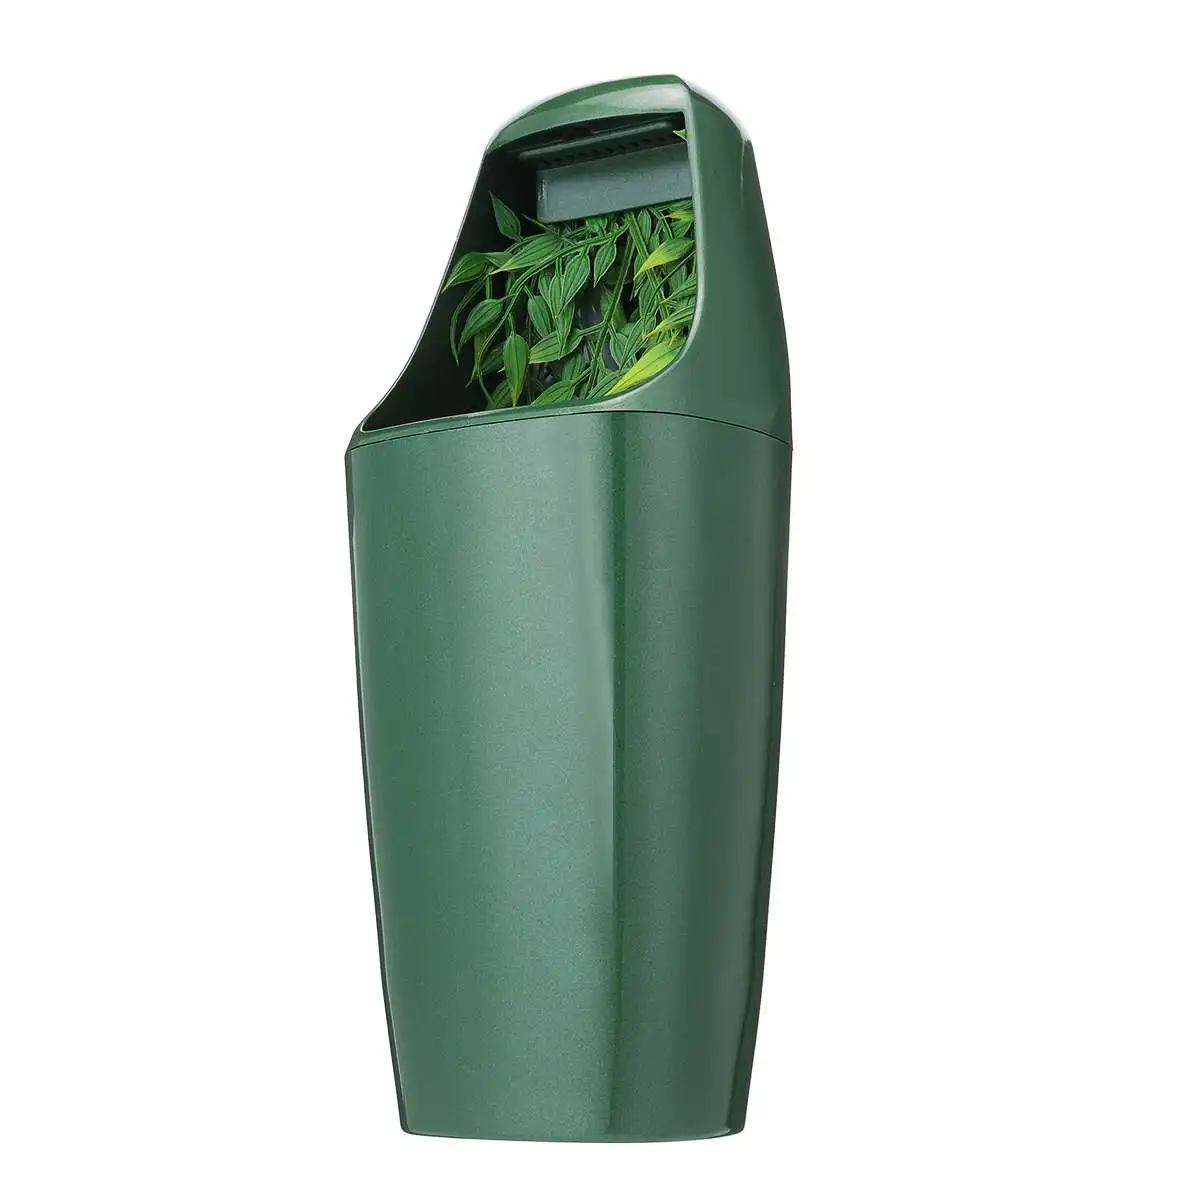 110 В/220 В рептилия фильтр для питьевой воды фонтан зеленый кормления Хамелеон ящерица ABS диспенсер Террариум рептилий поставки